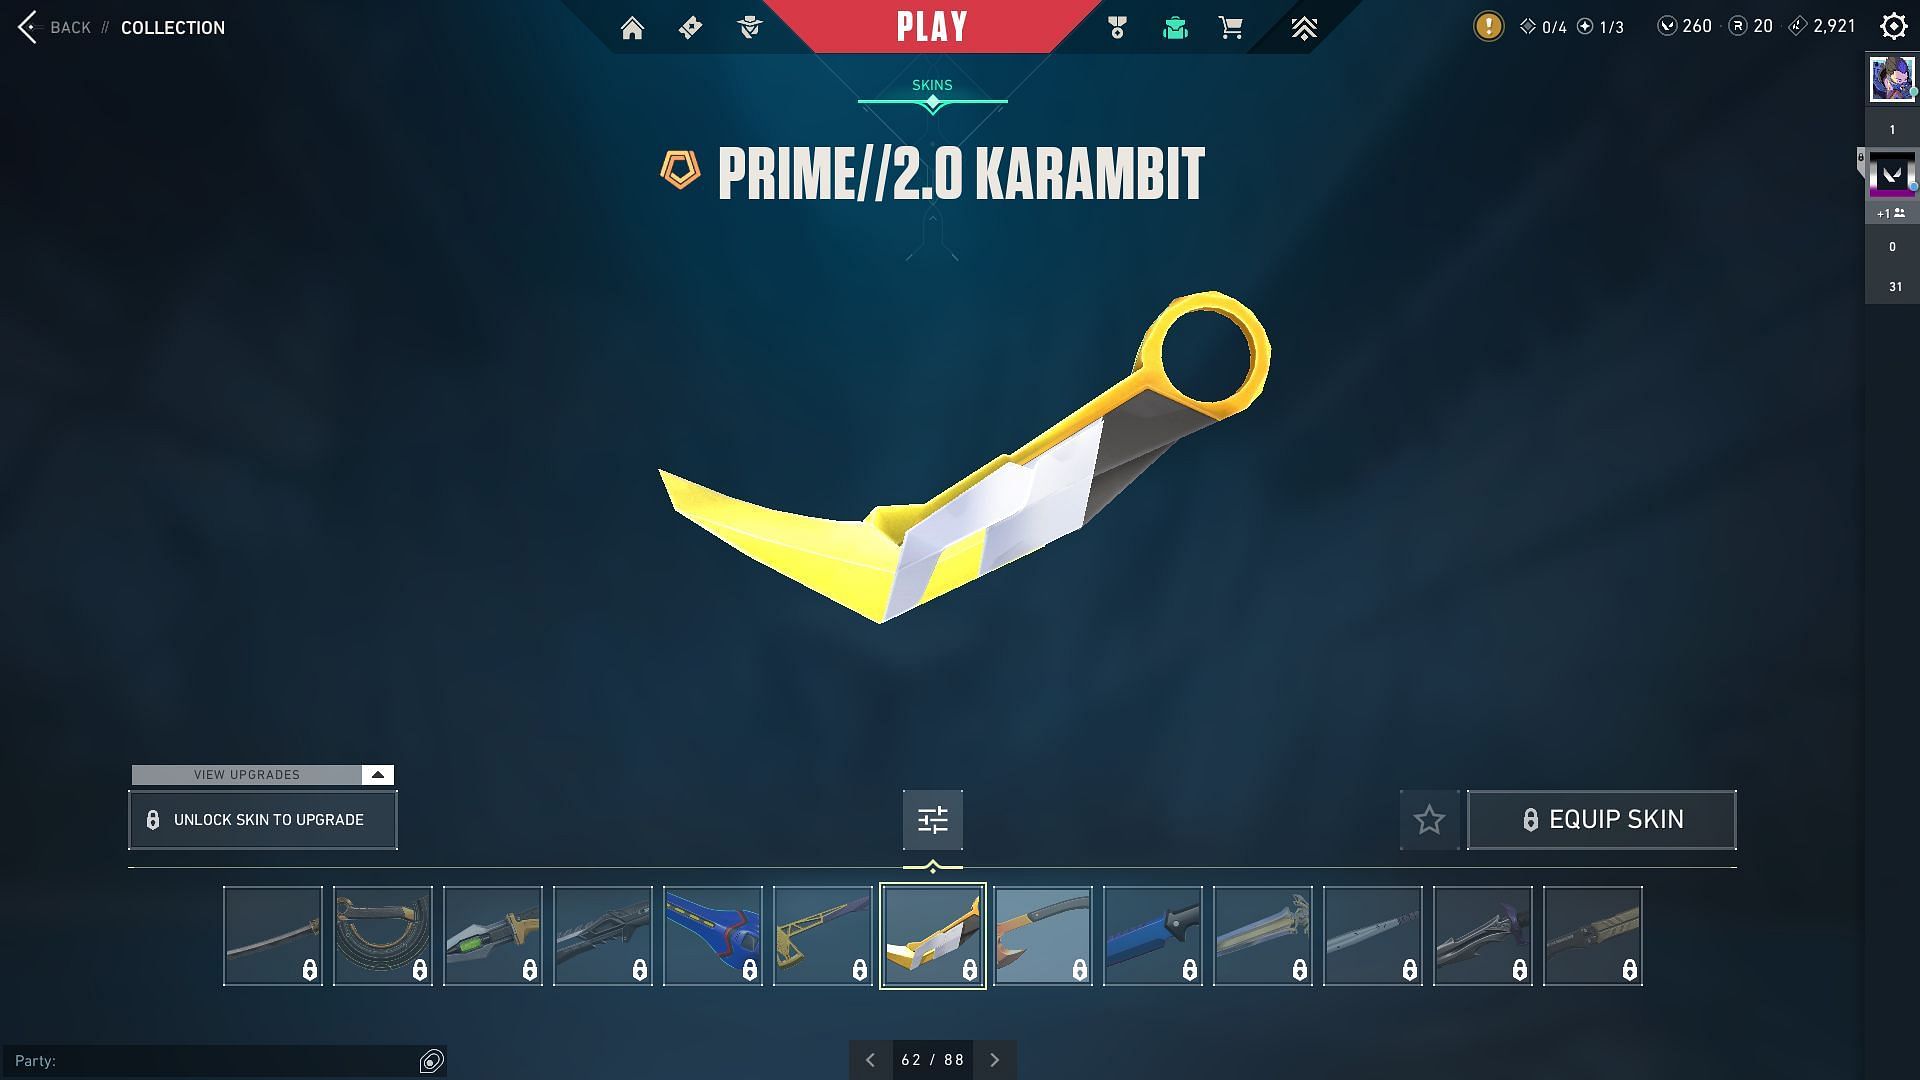 Prime 2.0 Karambit in Valorant (Image via Riot Games)